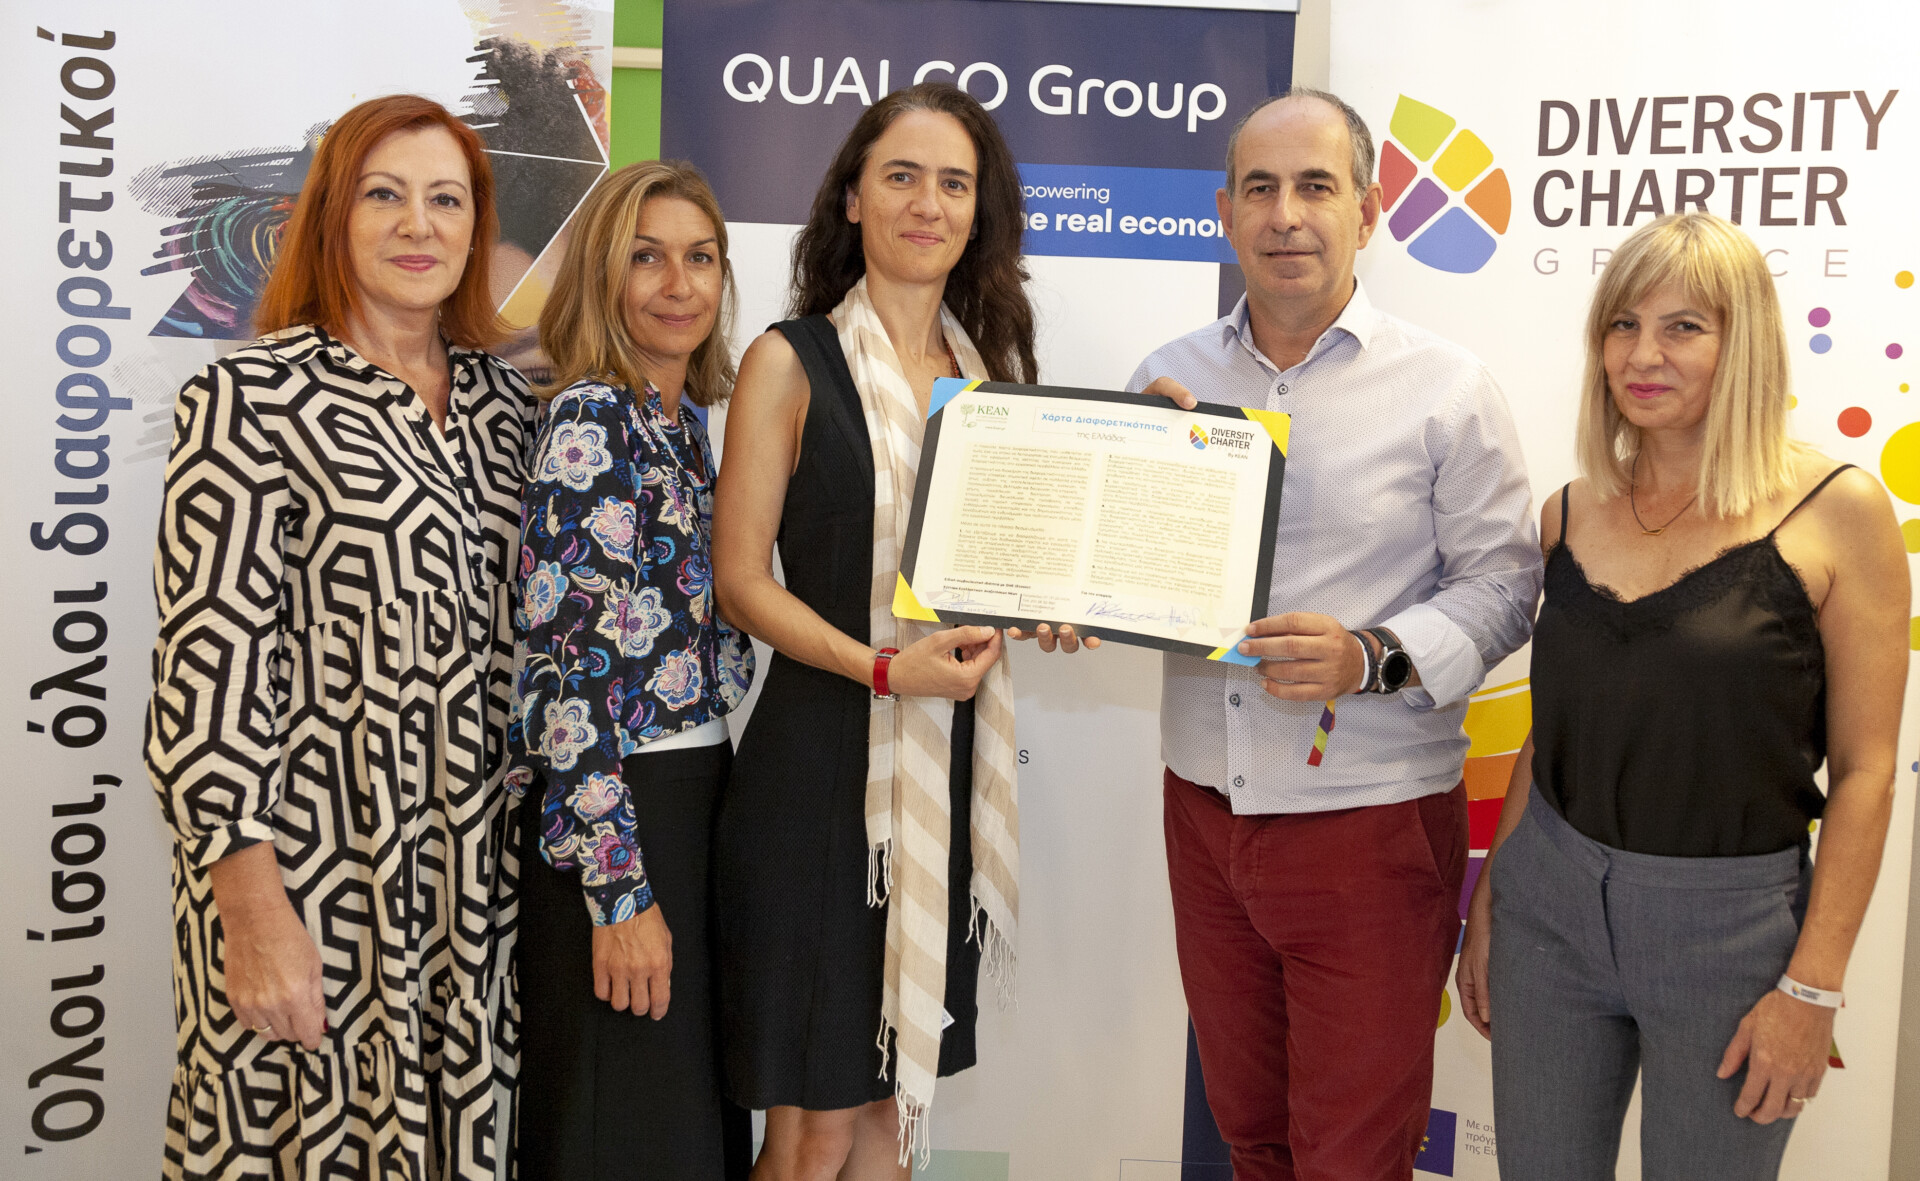 Ο όμιλος Qualco υπέγραψε τη Χάρτα Διαφορετικότητας για τις ελληνικές επιχειρήσεις © Qualco